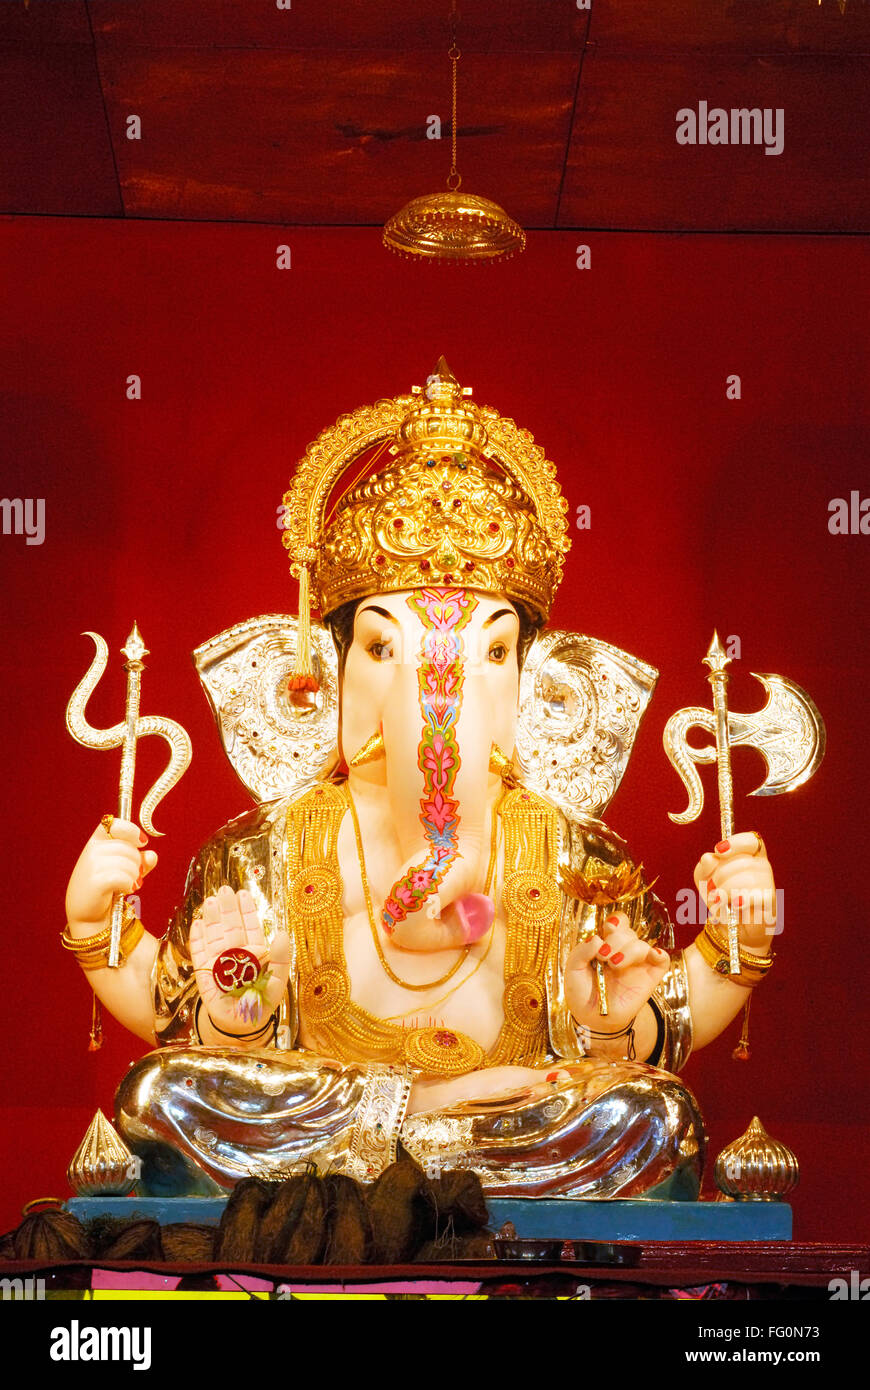 Richly decorated idol of lord ganesh elephant headed god Ganpati ...